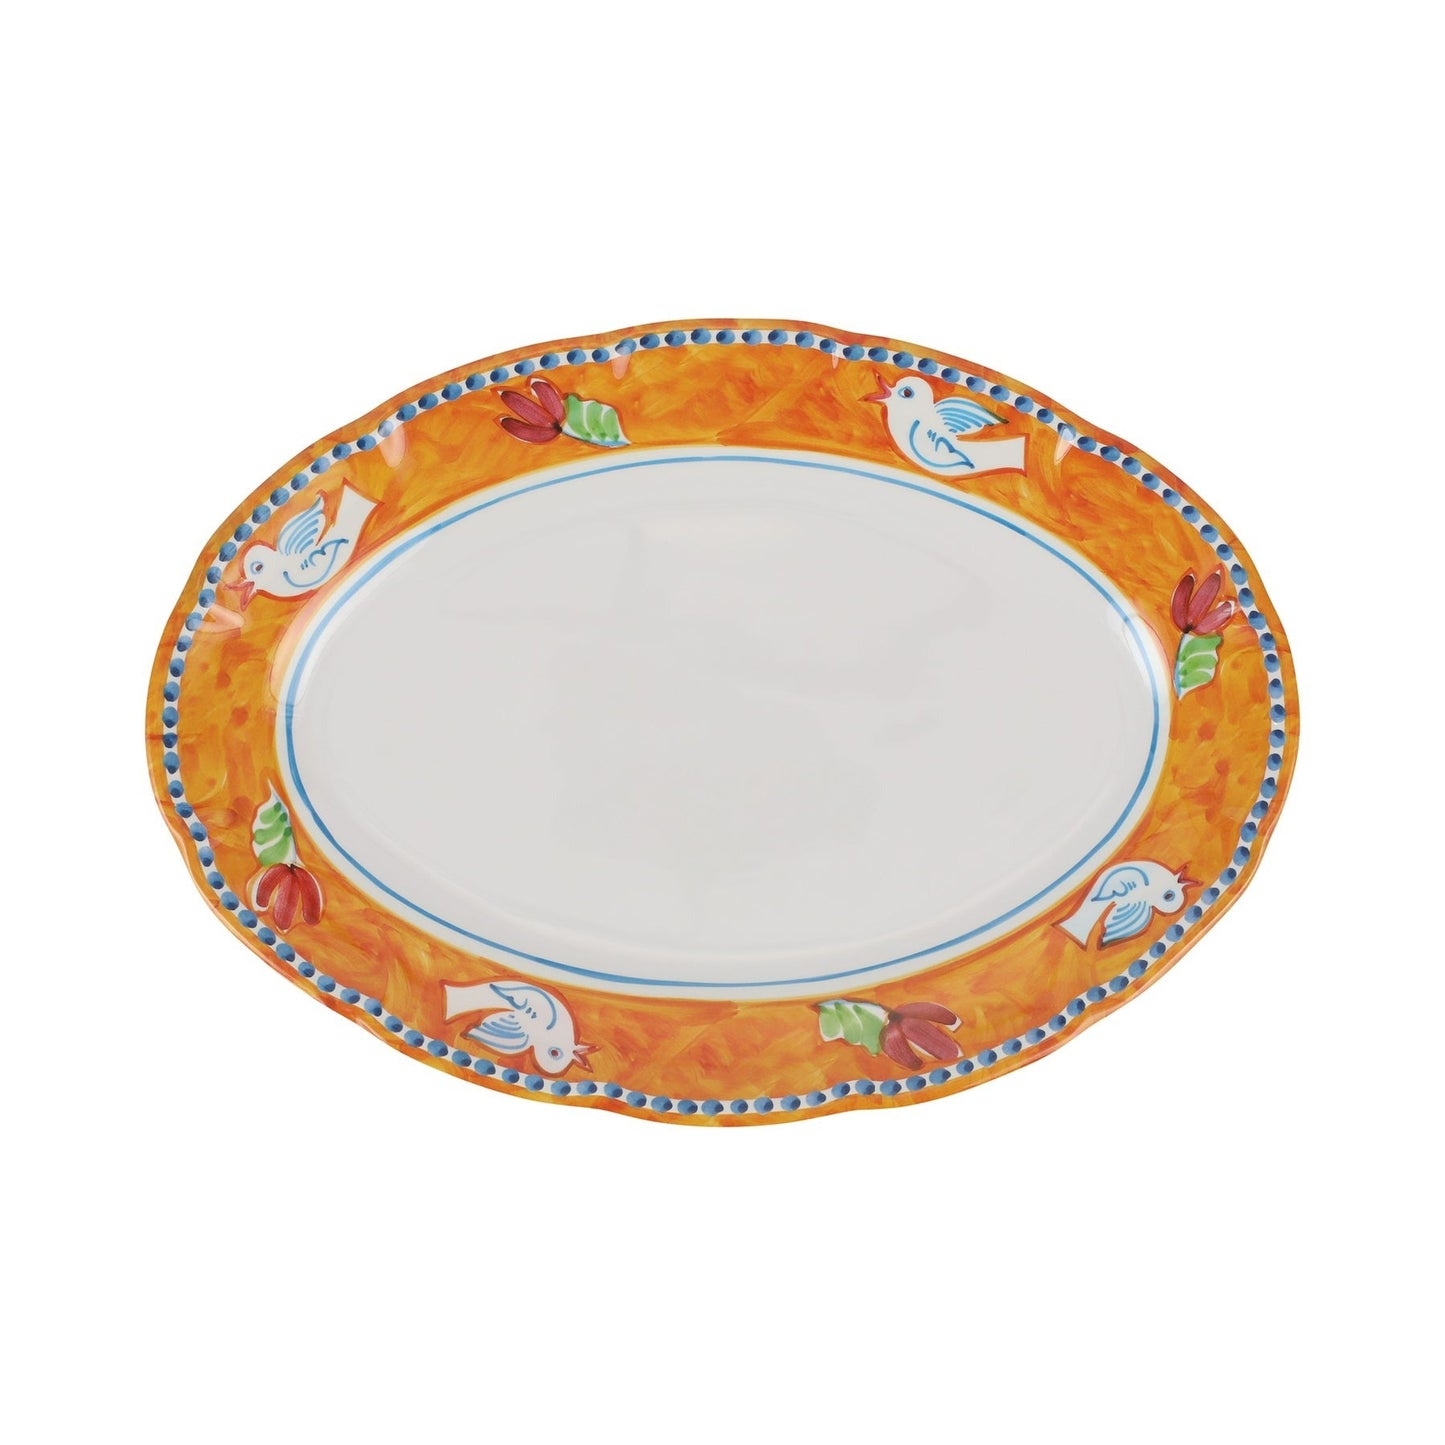 Melamine Campagna Ucello Orange Large Oval Platter